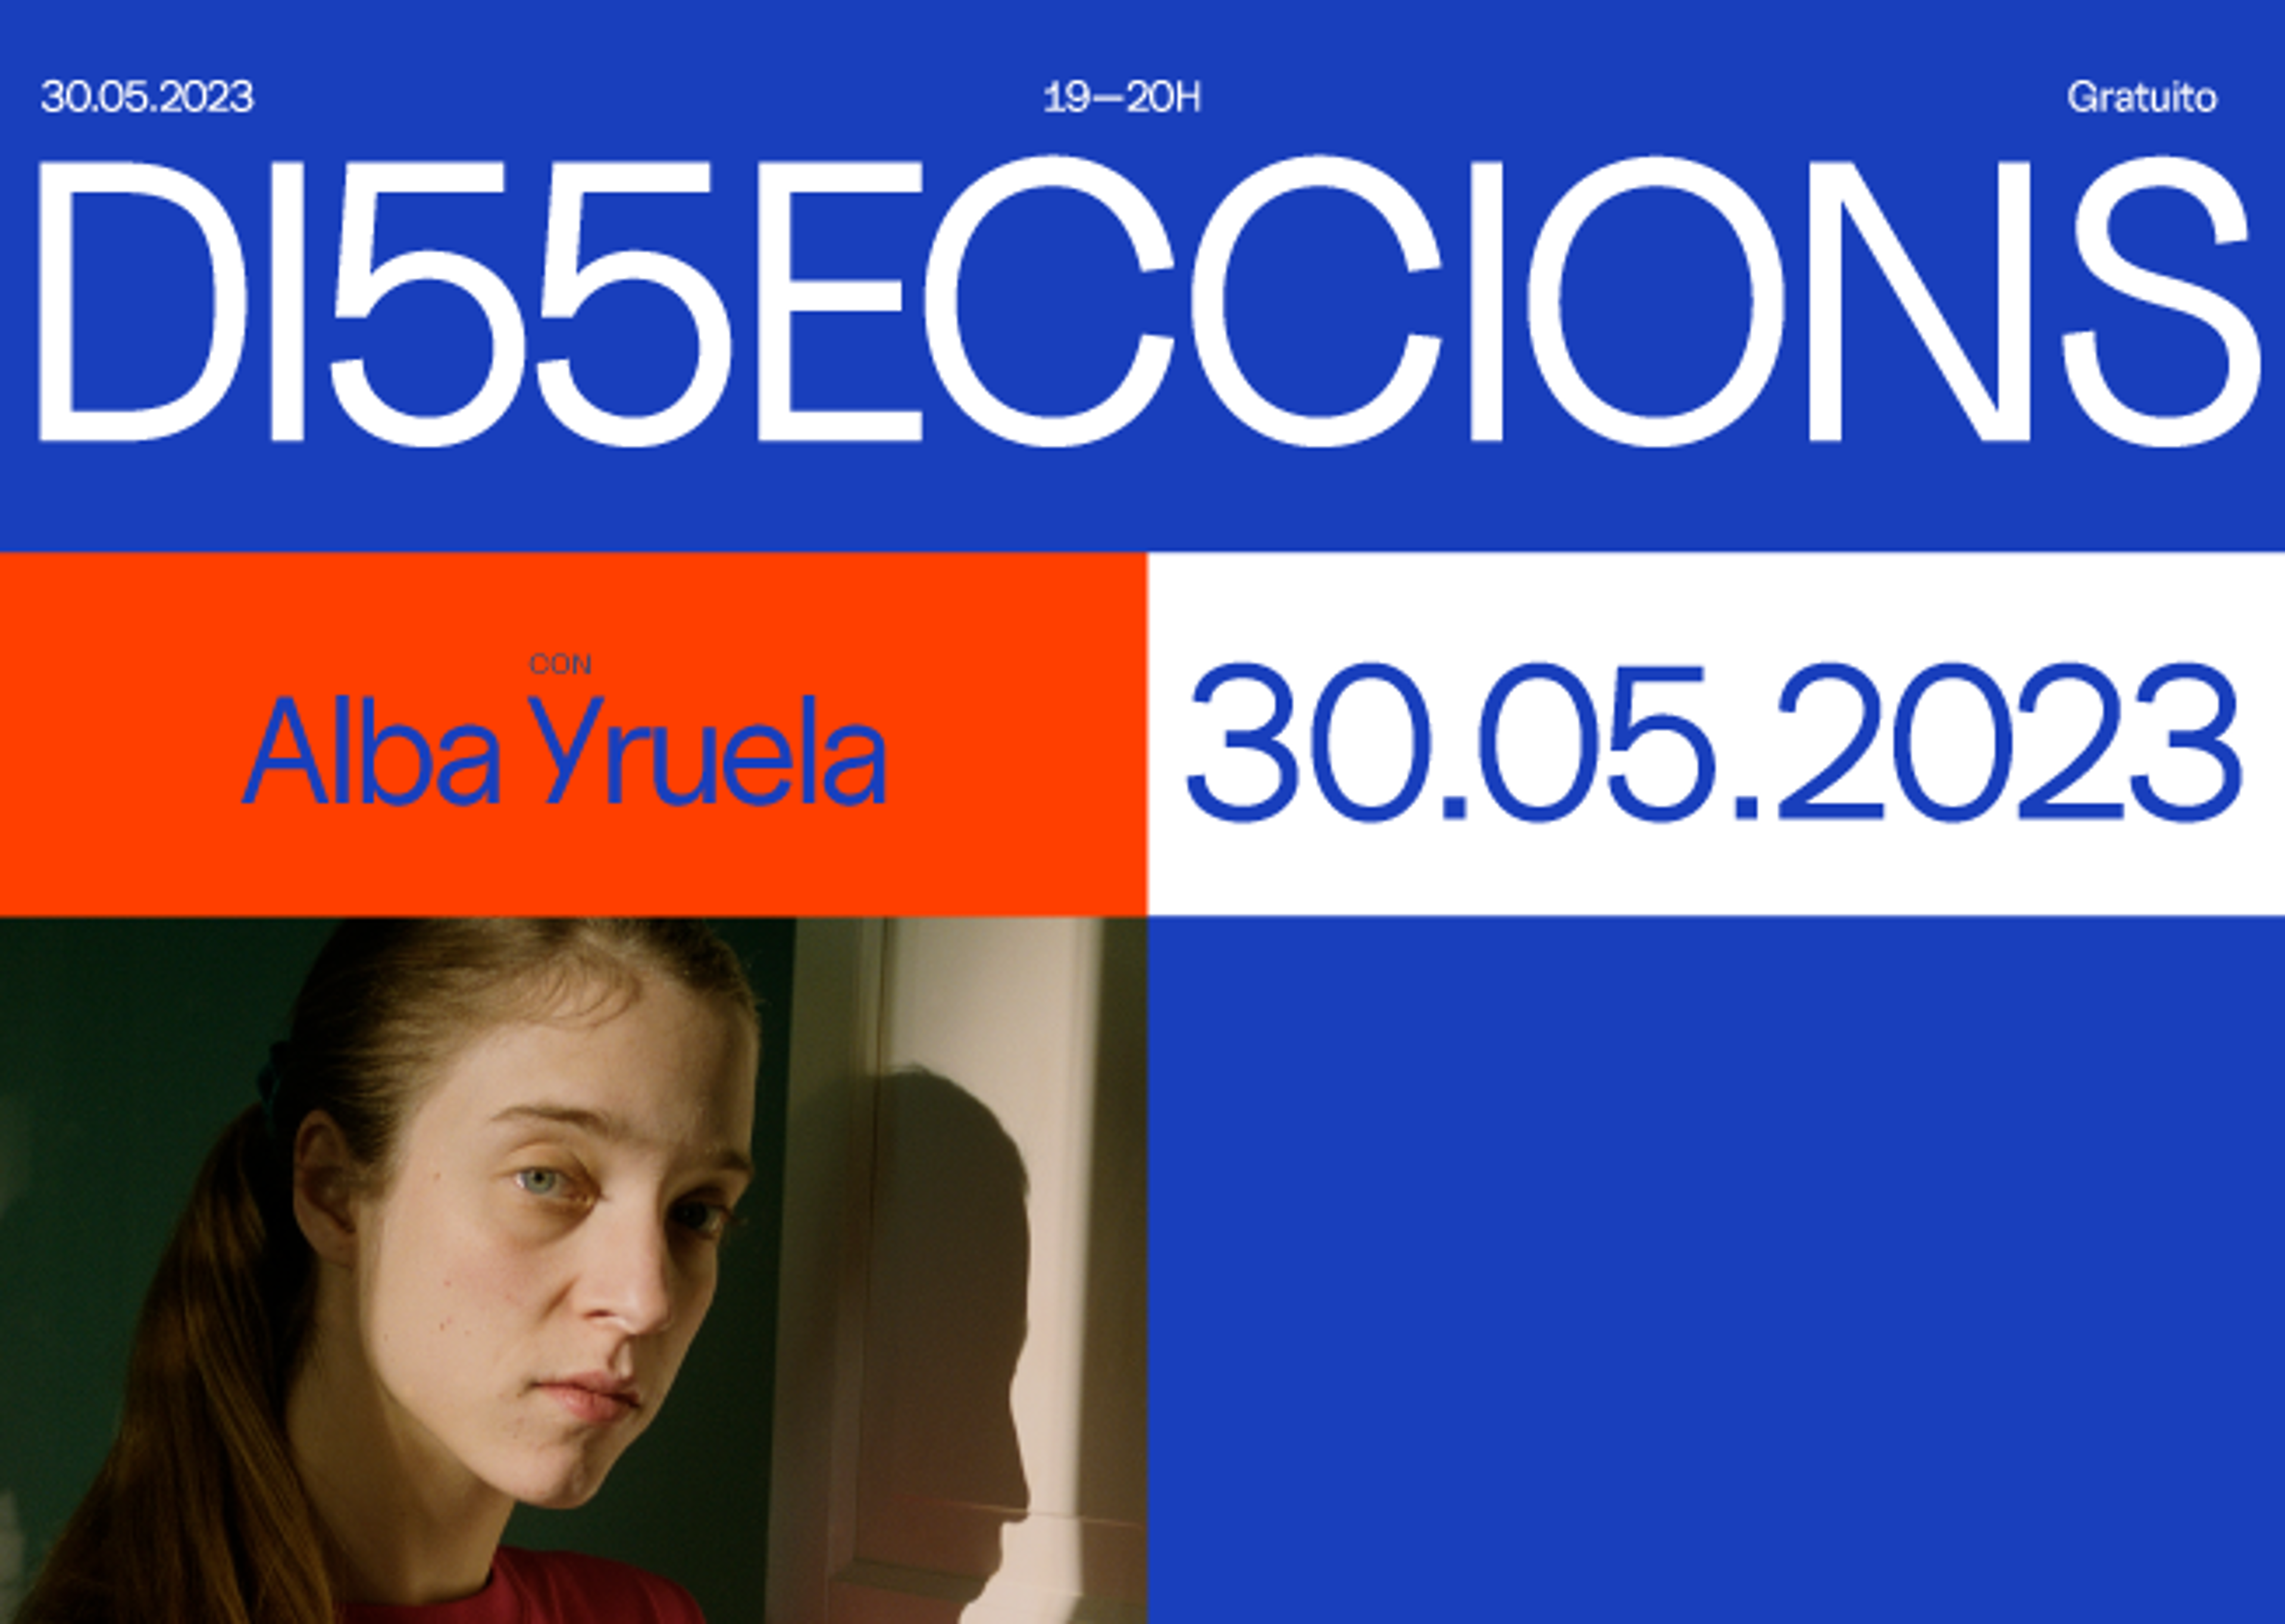 Un pòster per a 'DISSECCIONS' amb Alba Yruela, datat el 30.05.2023, amb una dona pensativa al costat d'una finestra.